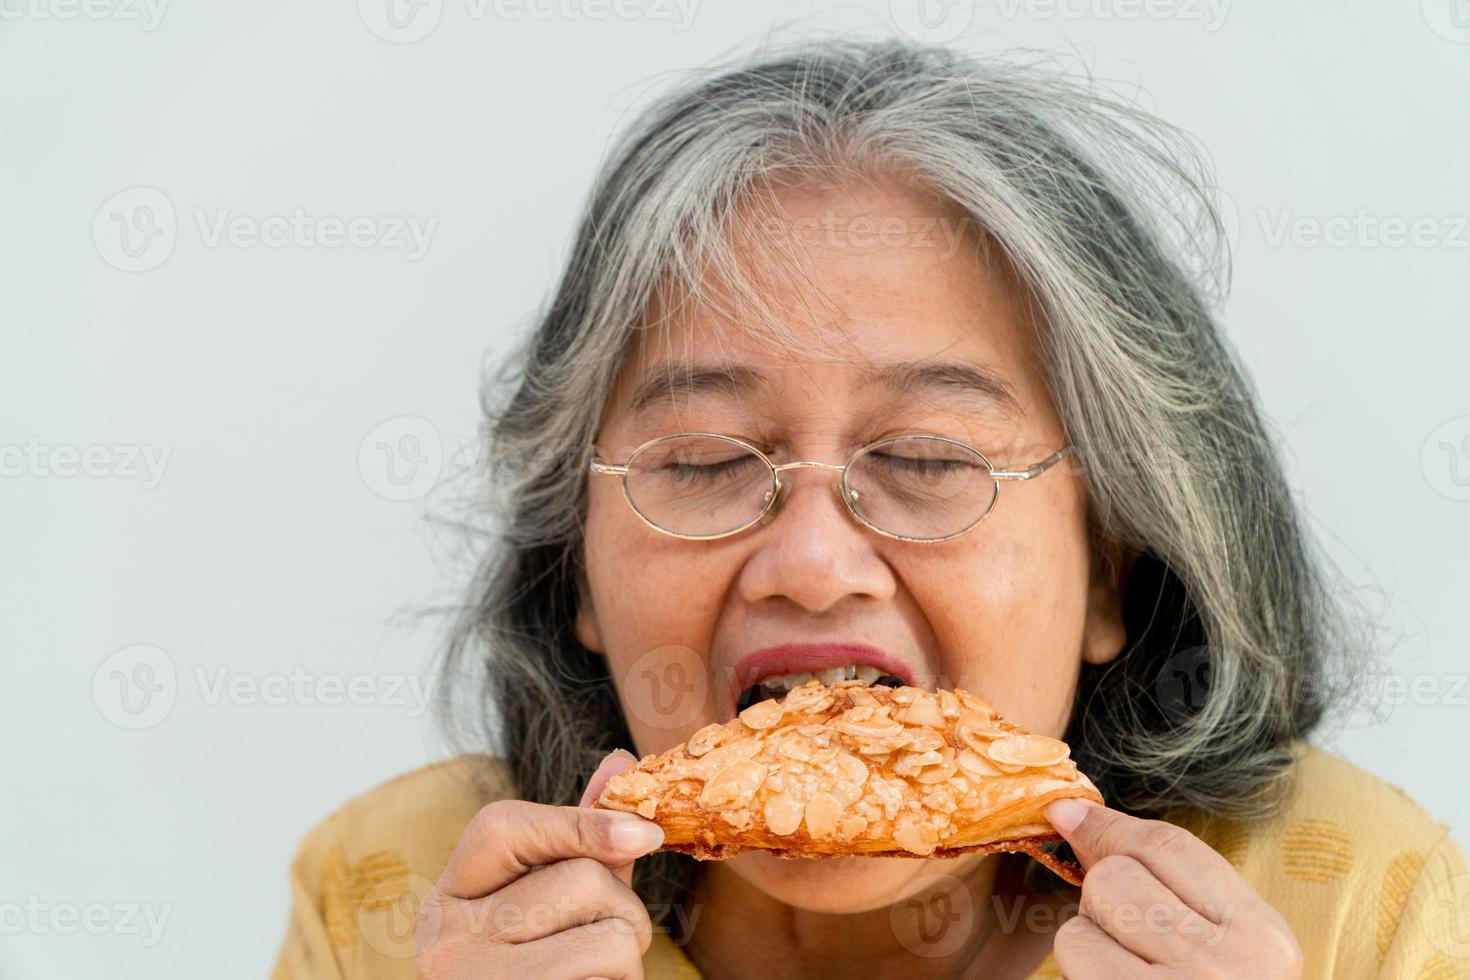 glada asiatiska äldre kvinnor njuter av att äta paj foto